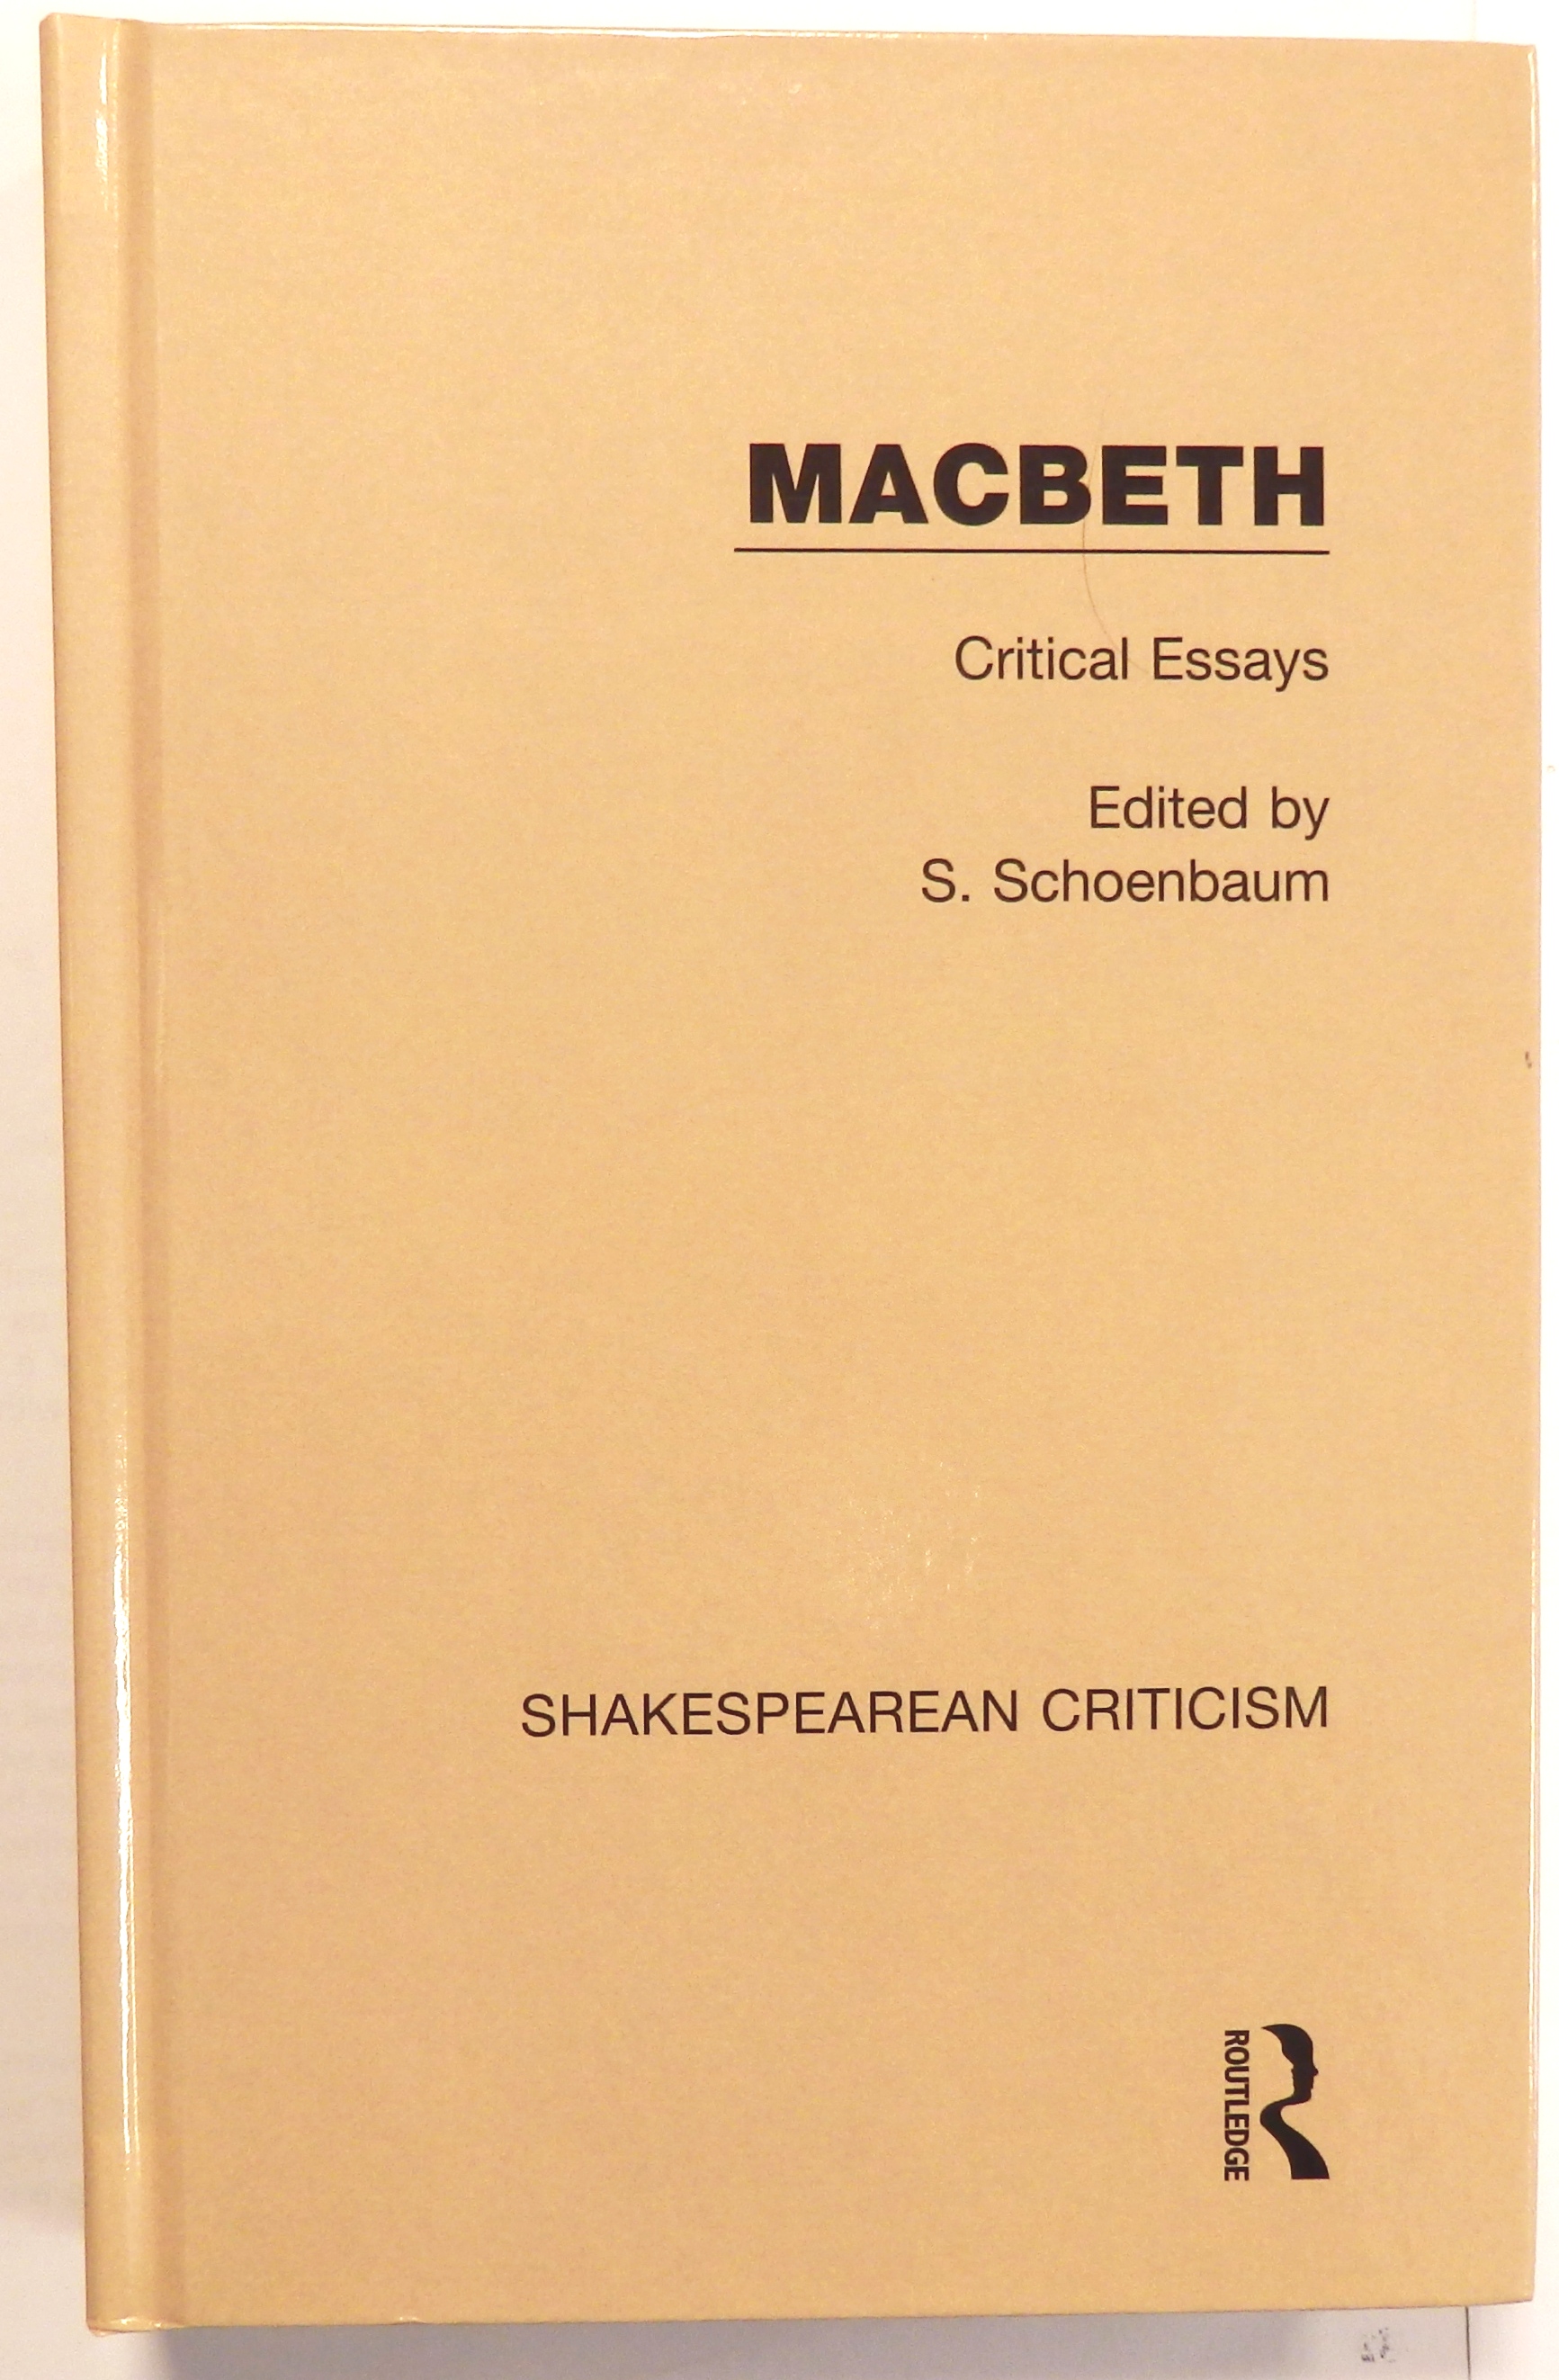 nat 5 critical essay macbeth